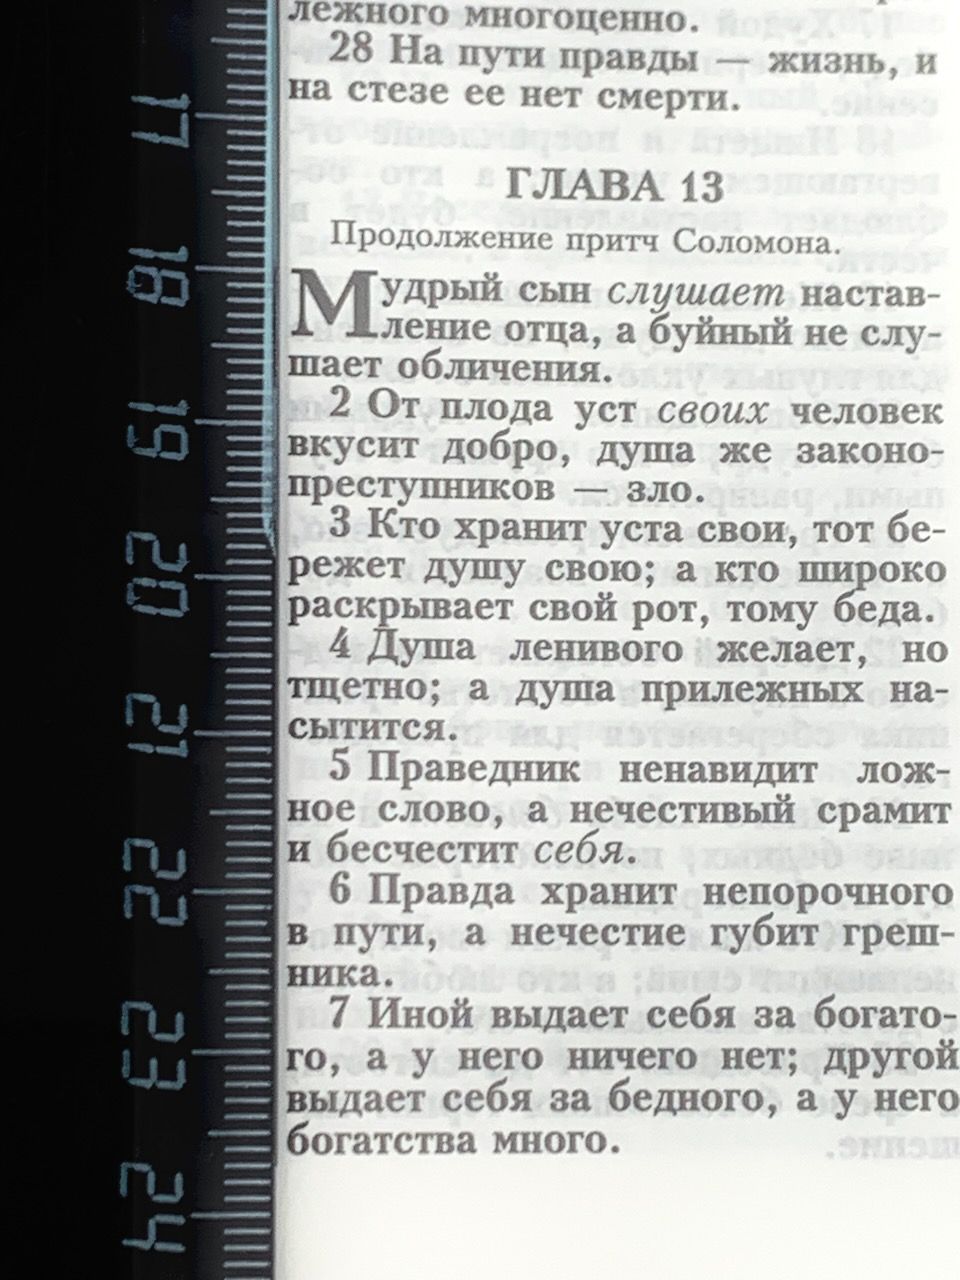 Библия 053z код B1 надпись "Библия", кожаный переплет на молнии, цвет черный, формат 140*202 мм